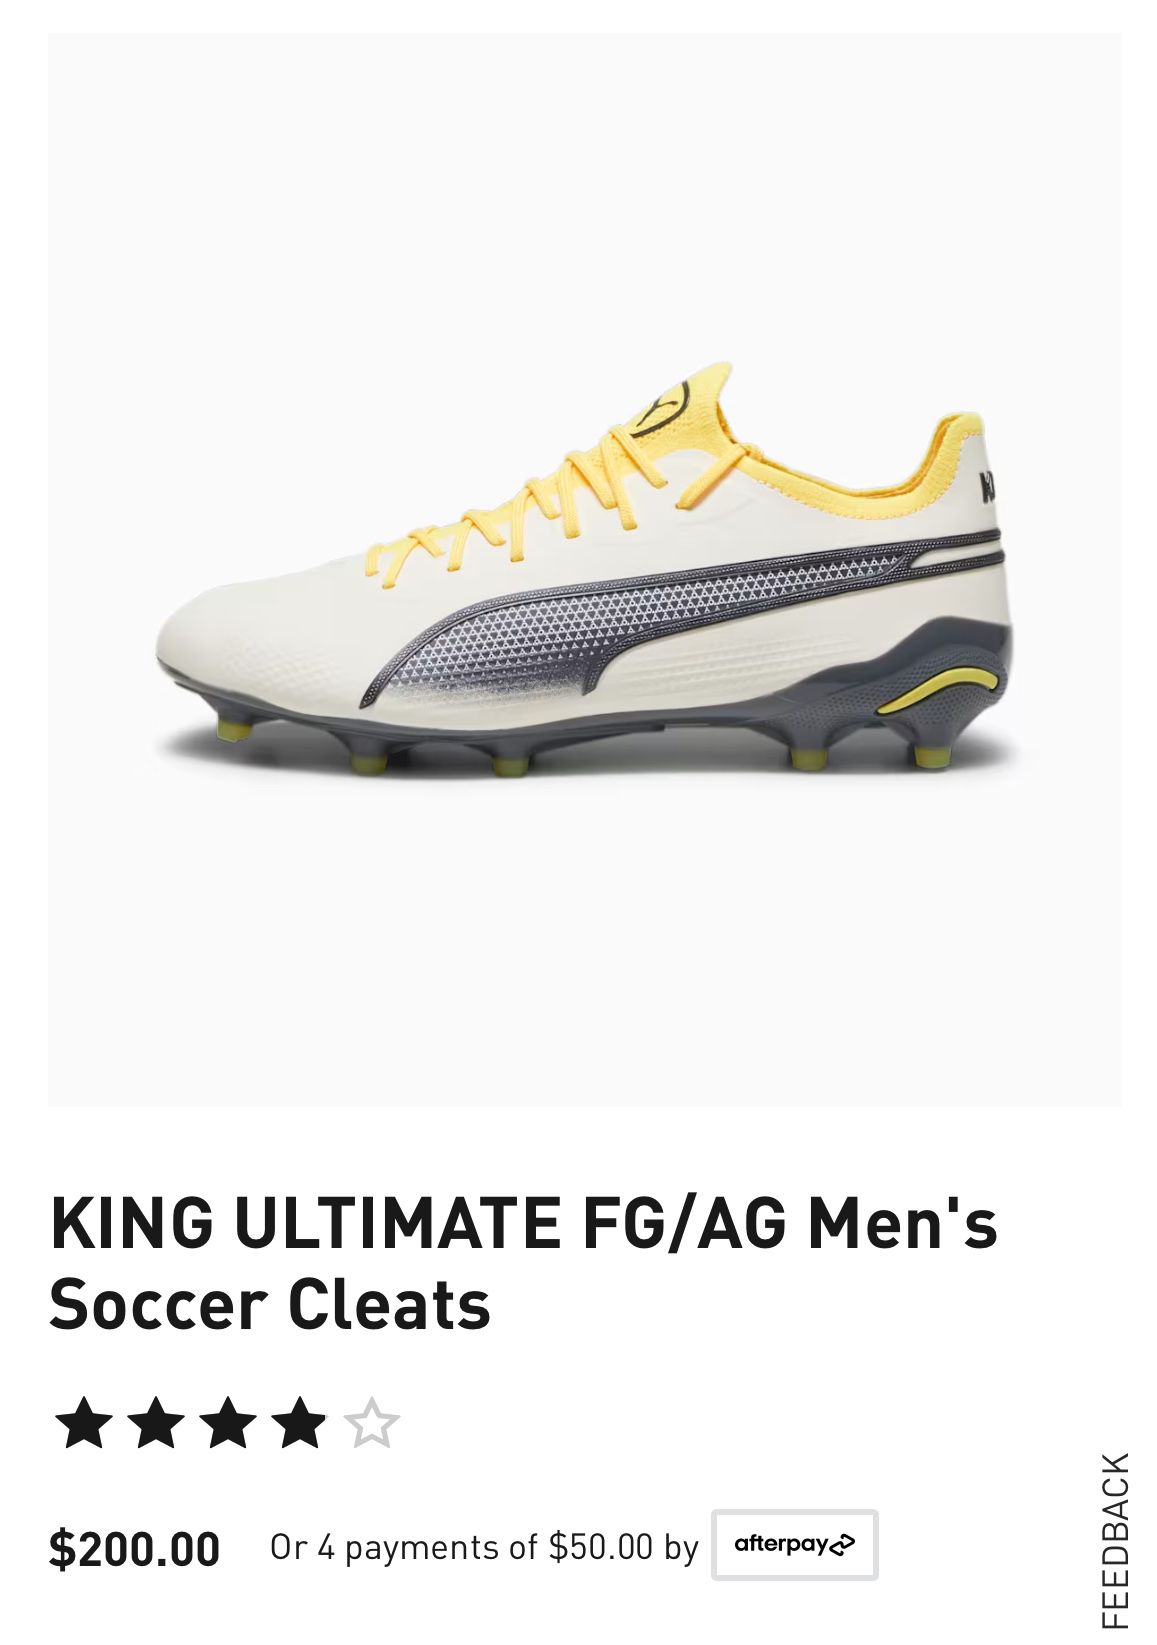 KING ULTIMATE FG/AG Men's Soccer Cleats